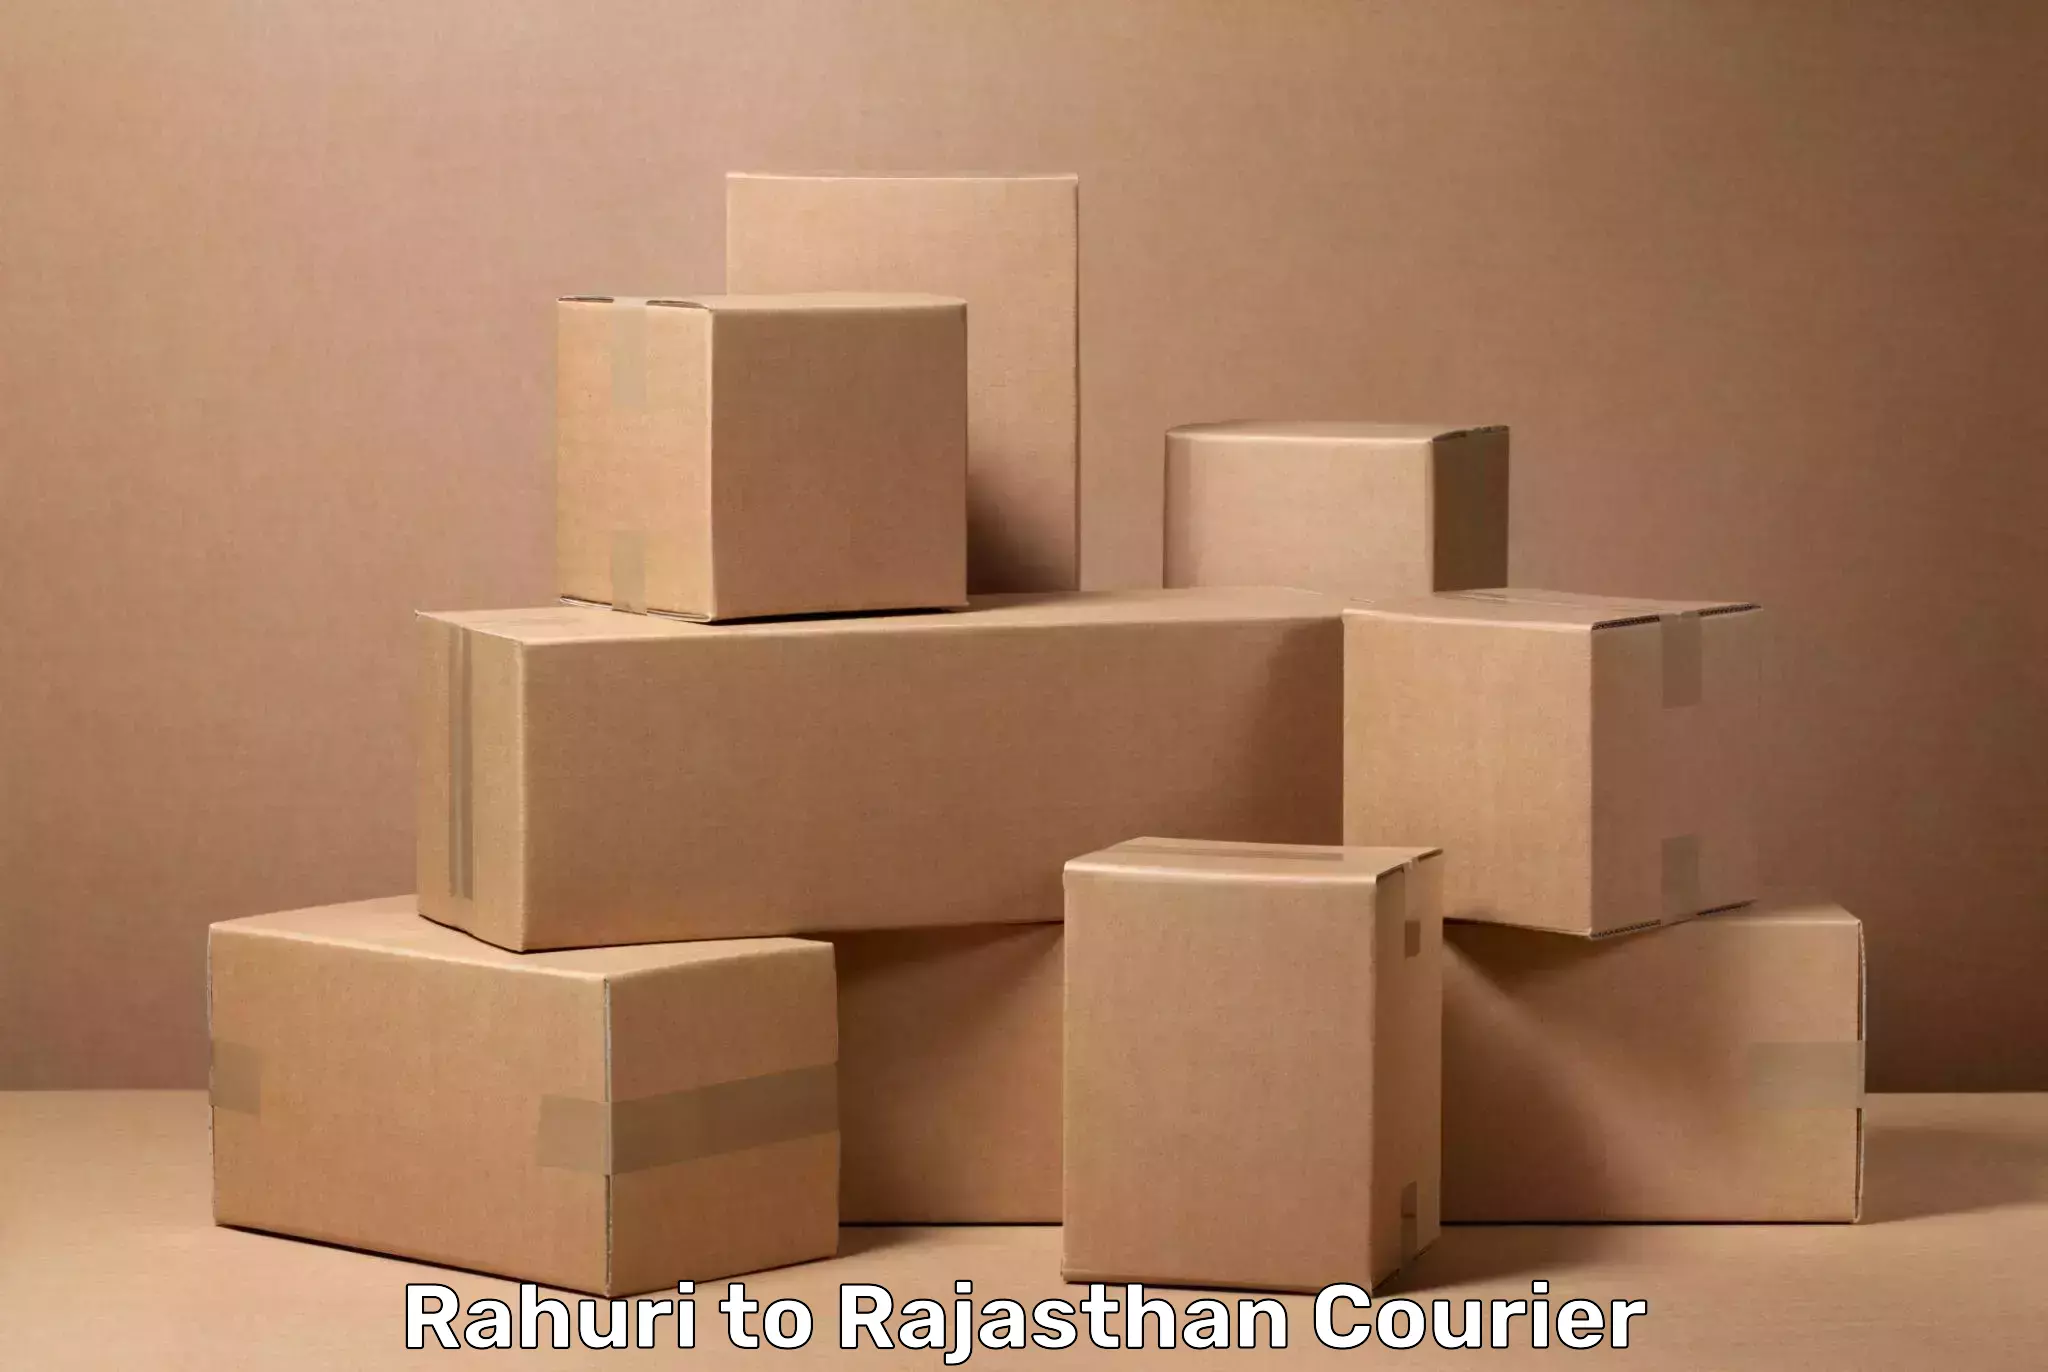 Luggage transfer service Rahuri to Rajasthan